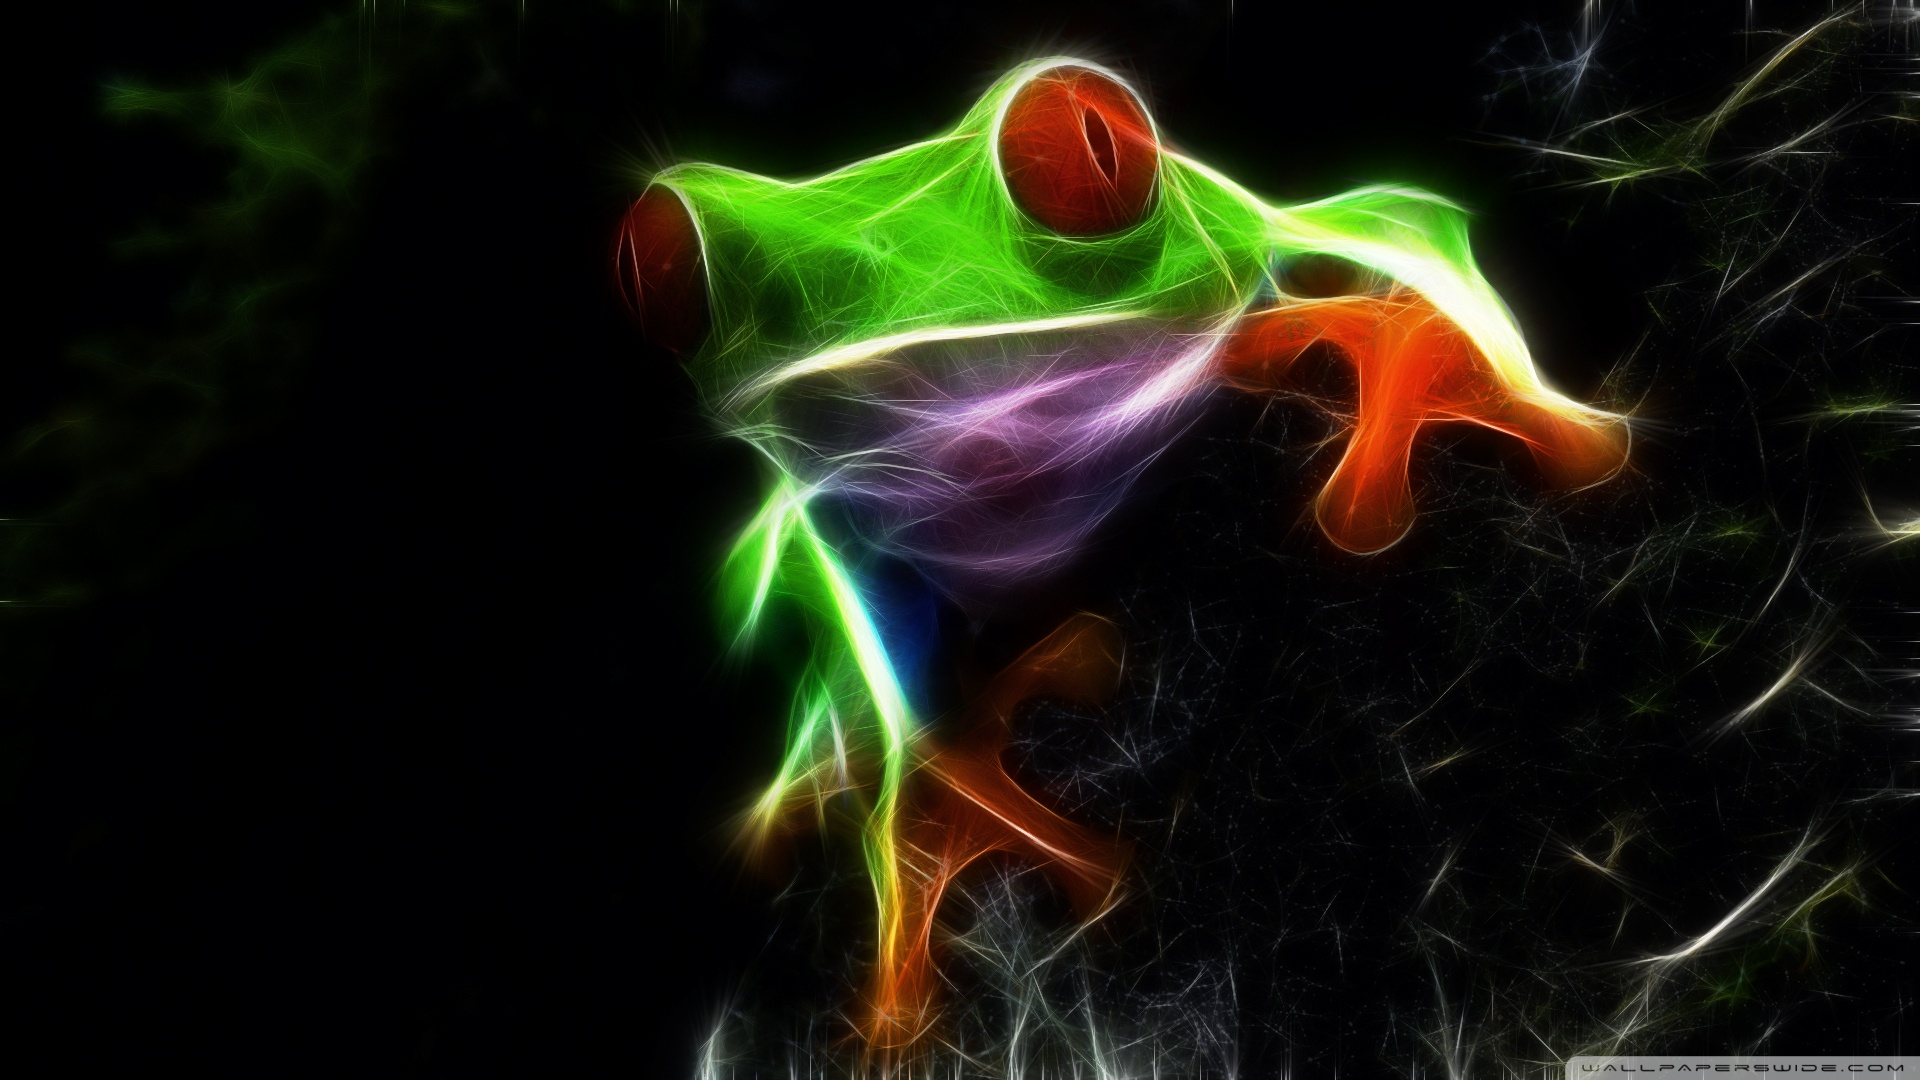 1920x1080 Free download Frog 2 Wallpaper Frog 2 [] for your Desktop, Mobile \u0026 Tablet | Explore 46+ Frog Desktop Wallpaper | Tree Frog Wallpaper, Animated Frog Wallpaper for Computer, HD Frog Wallpaper